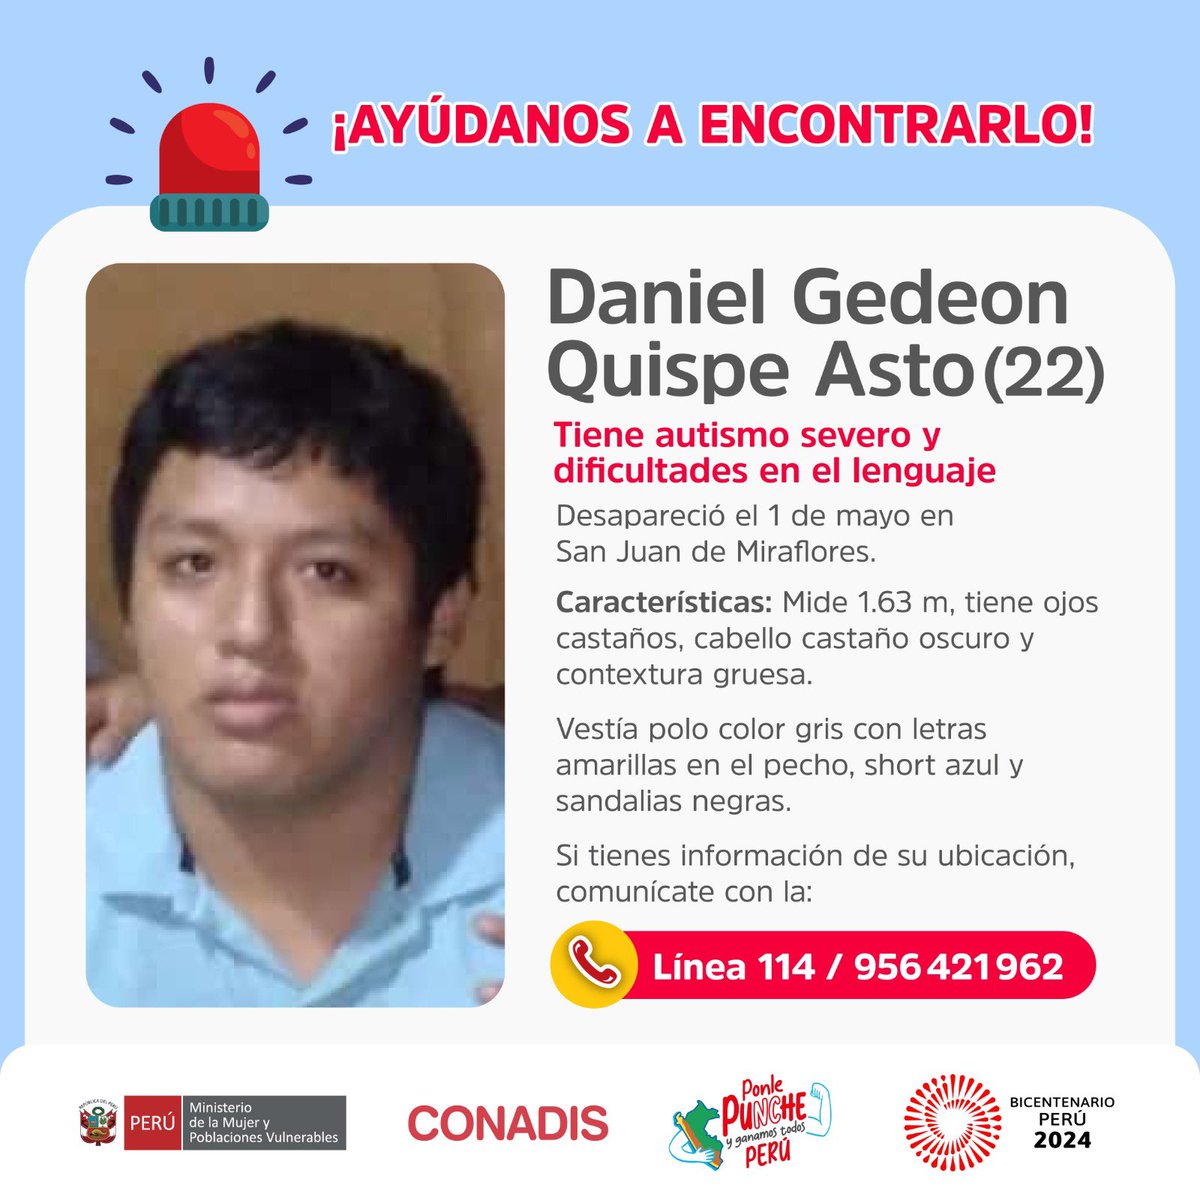 ¡Ayúdanos a encontrar a Daniel! 🚨 Daniel Gedeon Quispe Asto (22) desapareció el 1 de mayo en San Juan de Miraflores. Tiene autismo severo y dificultades para comunicarse. Si tienes información de su ubicación, comunícate con la 📱Línea 114 o al 956 421 962.